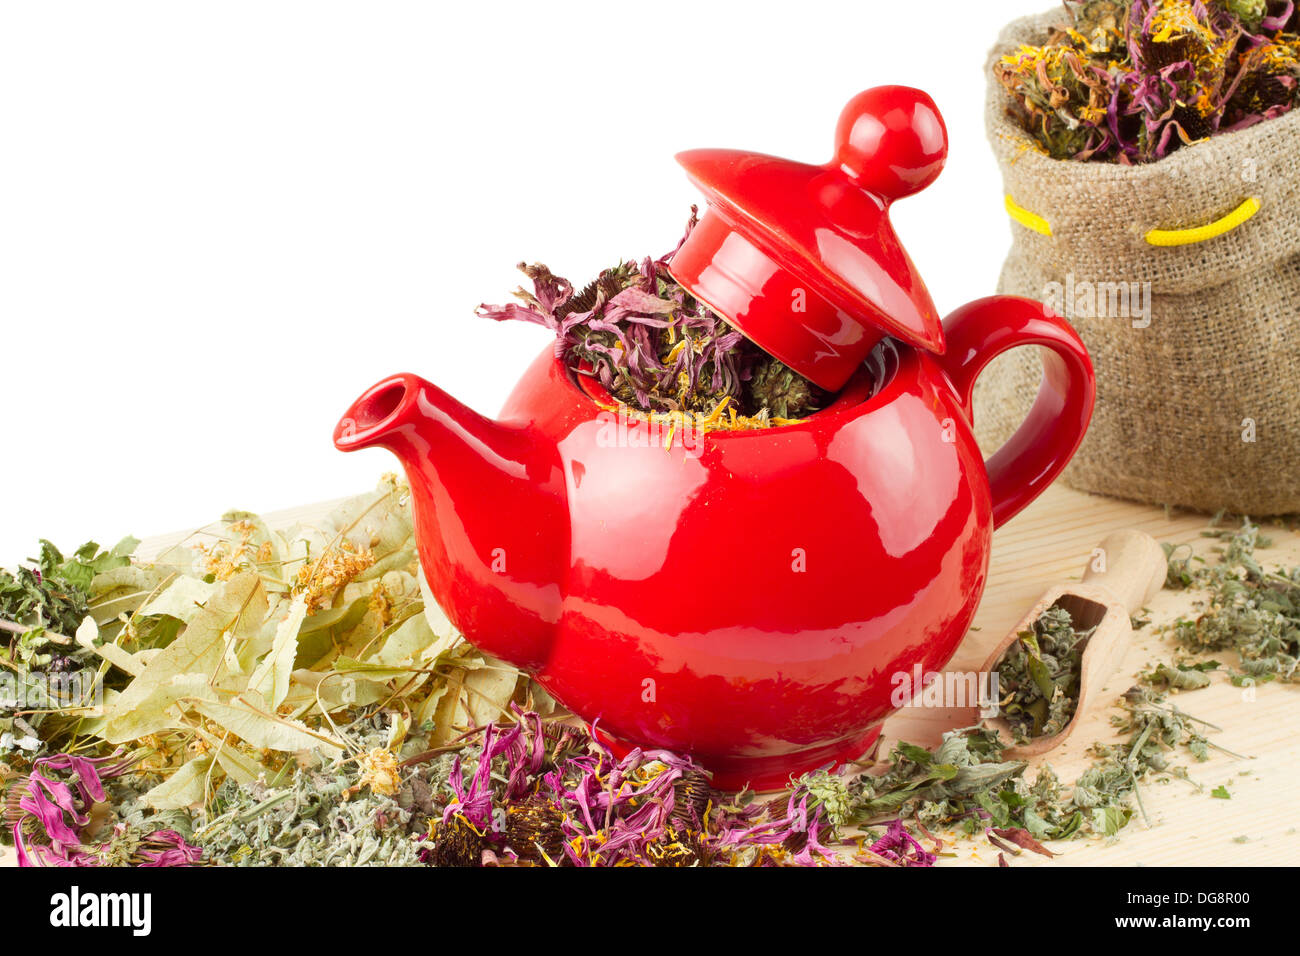 Teiera rosso, sacco con erbe curative, medicina alternativa Foto Stock